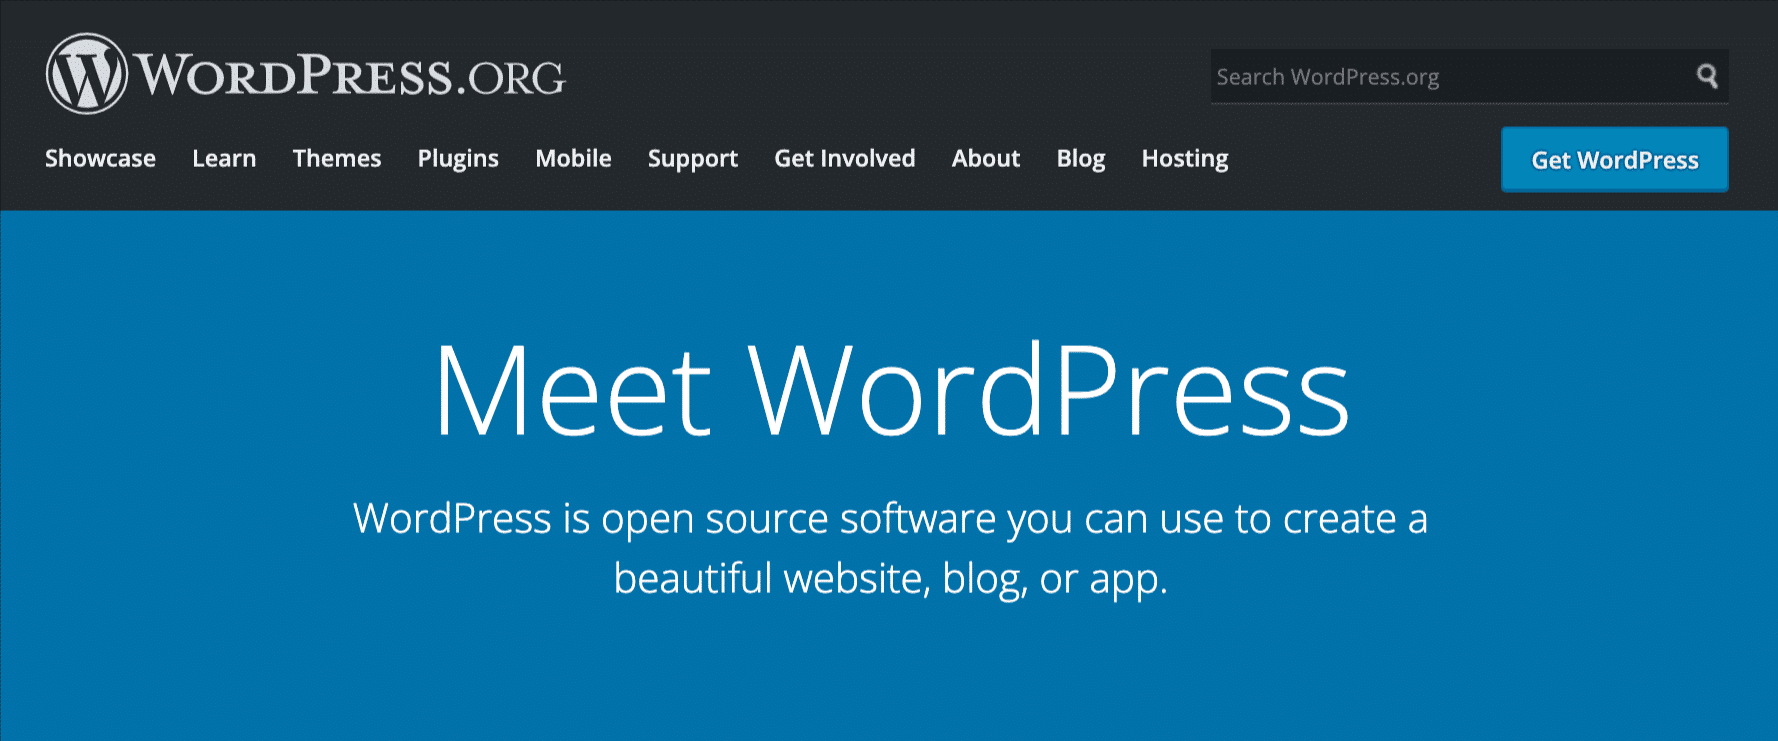 WordPress.org 主頁的屏幕截圖，藍色背景上有白色文字，上面寫著 